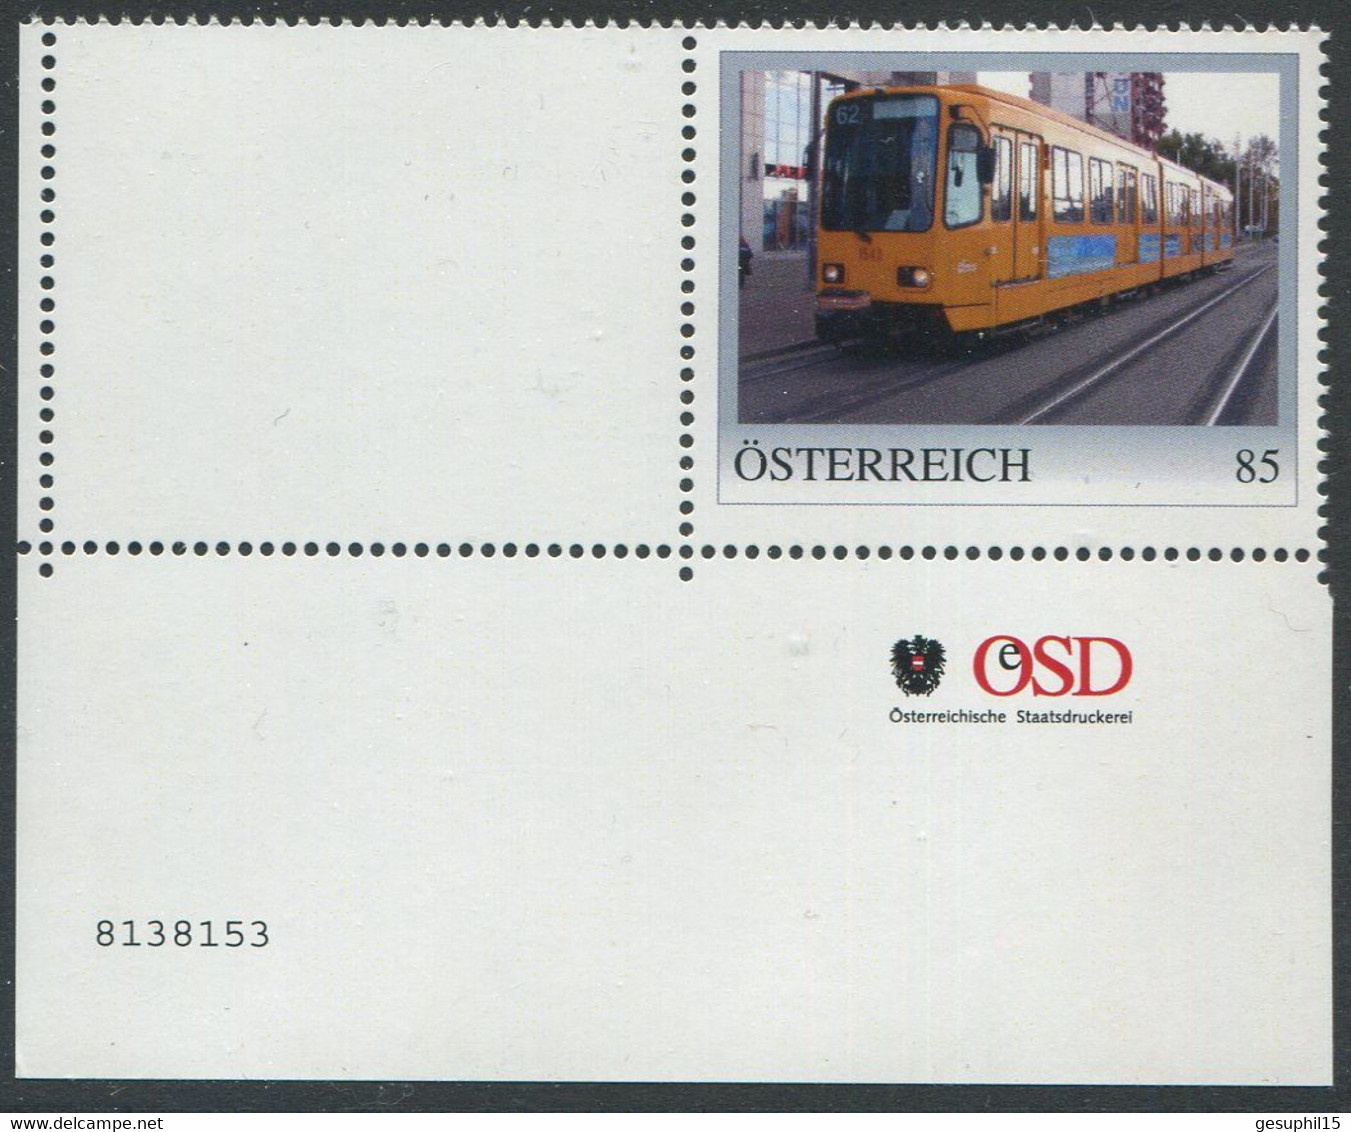 ÖSTERREICH / 8138153 / Straßenbahn Budapest / Eckrandstück Mit Nummer / Postfrisch / ** / MNH - Personnalized Stamps